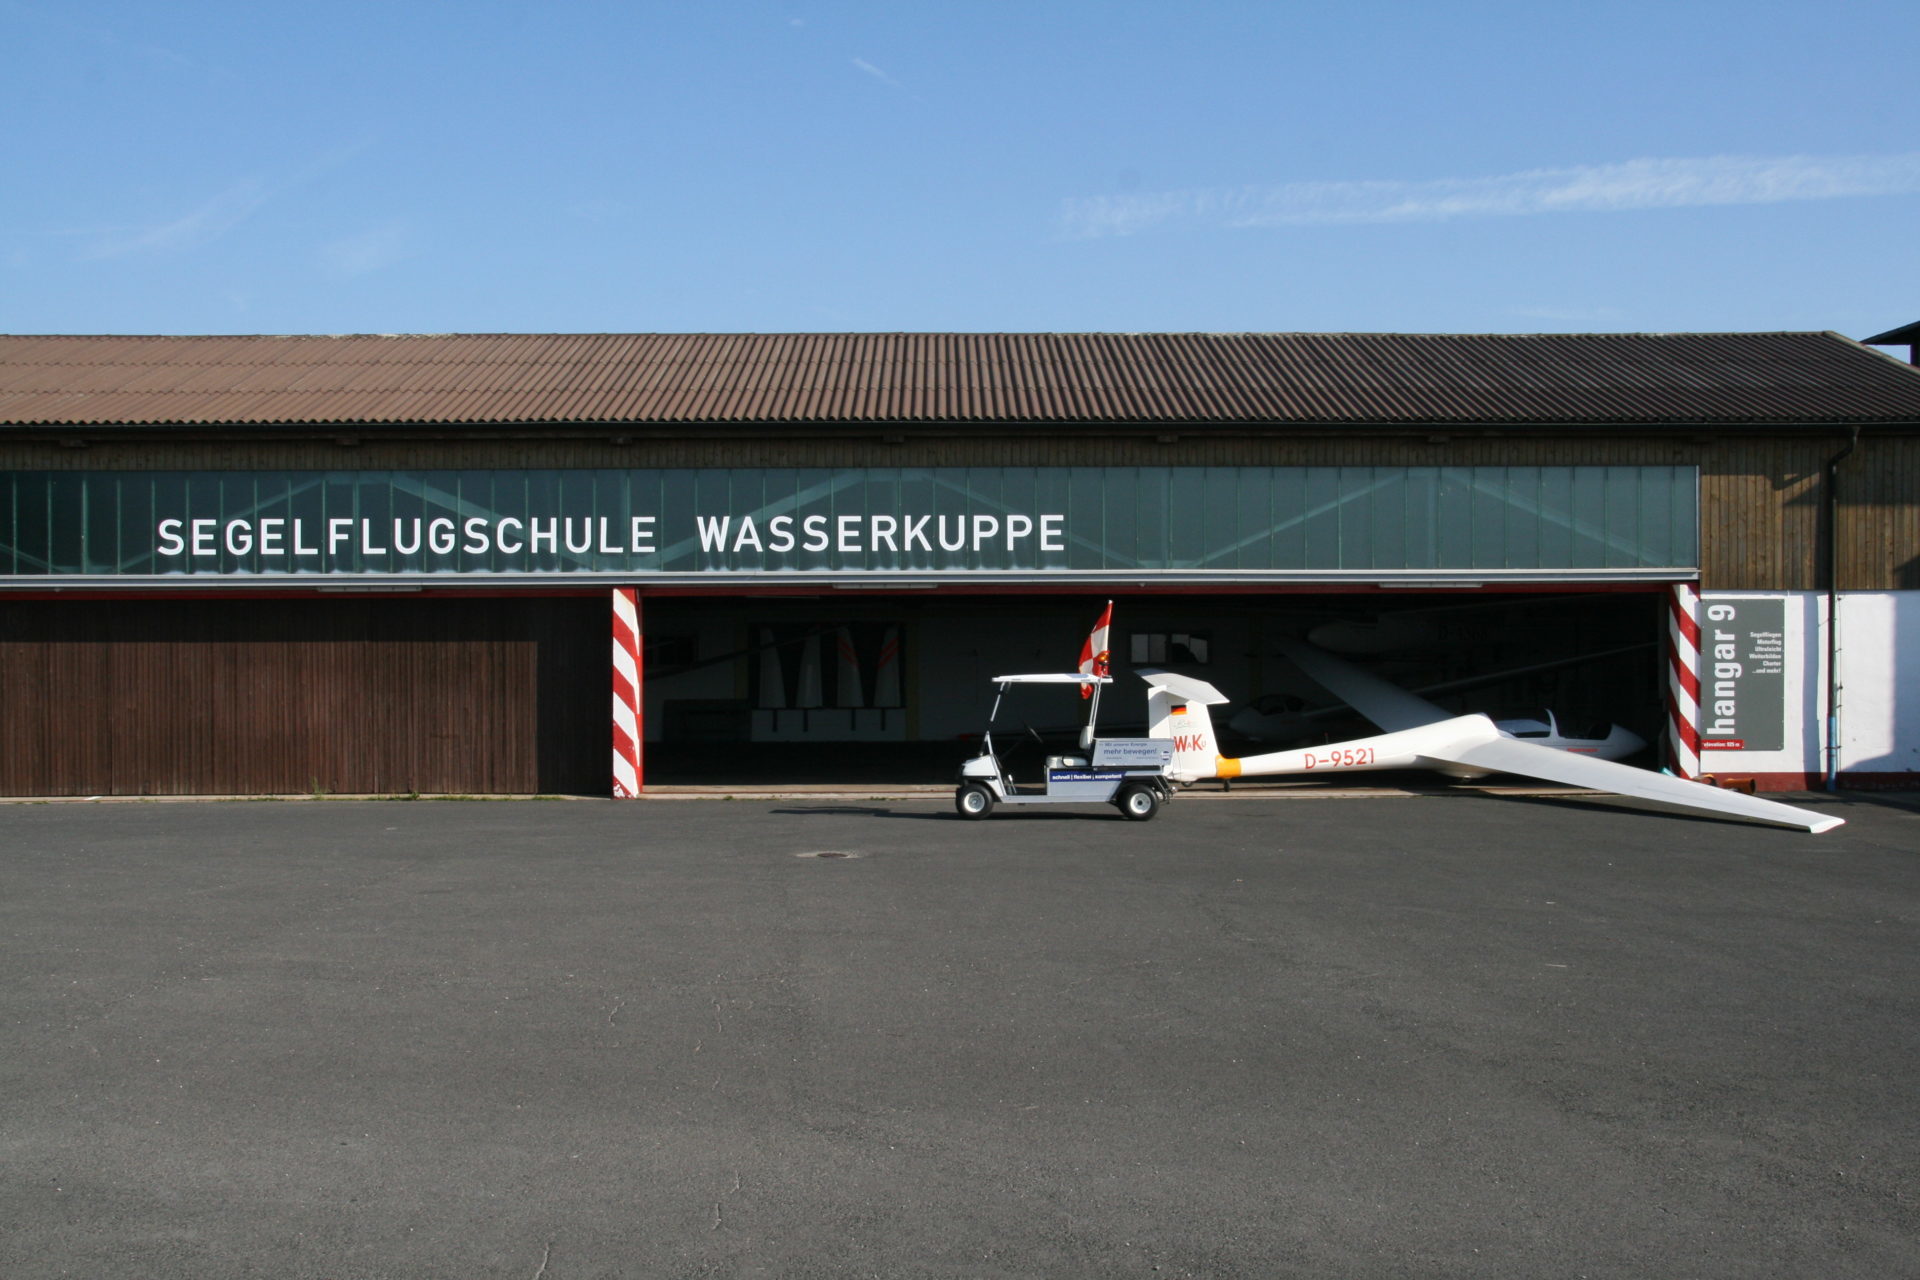 Hangar der Segelflugschule Wasserkuppe in der Rhön